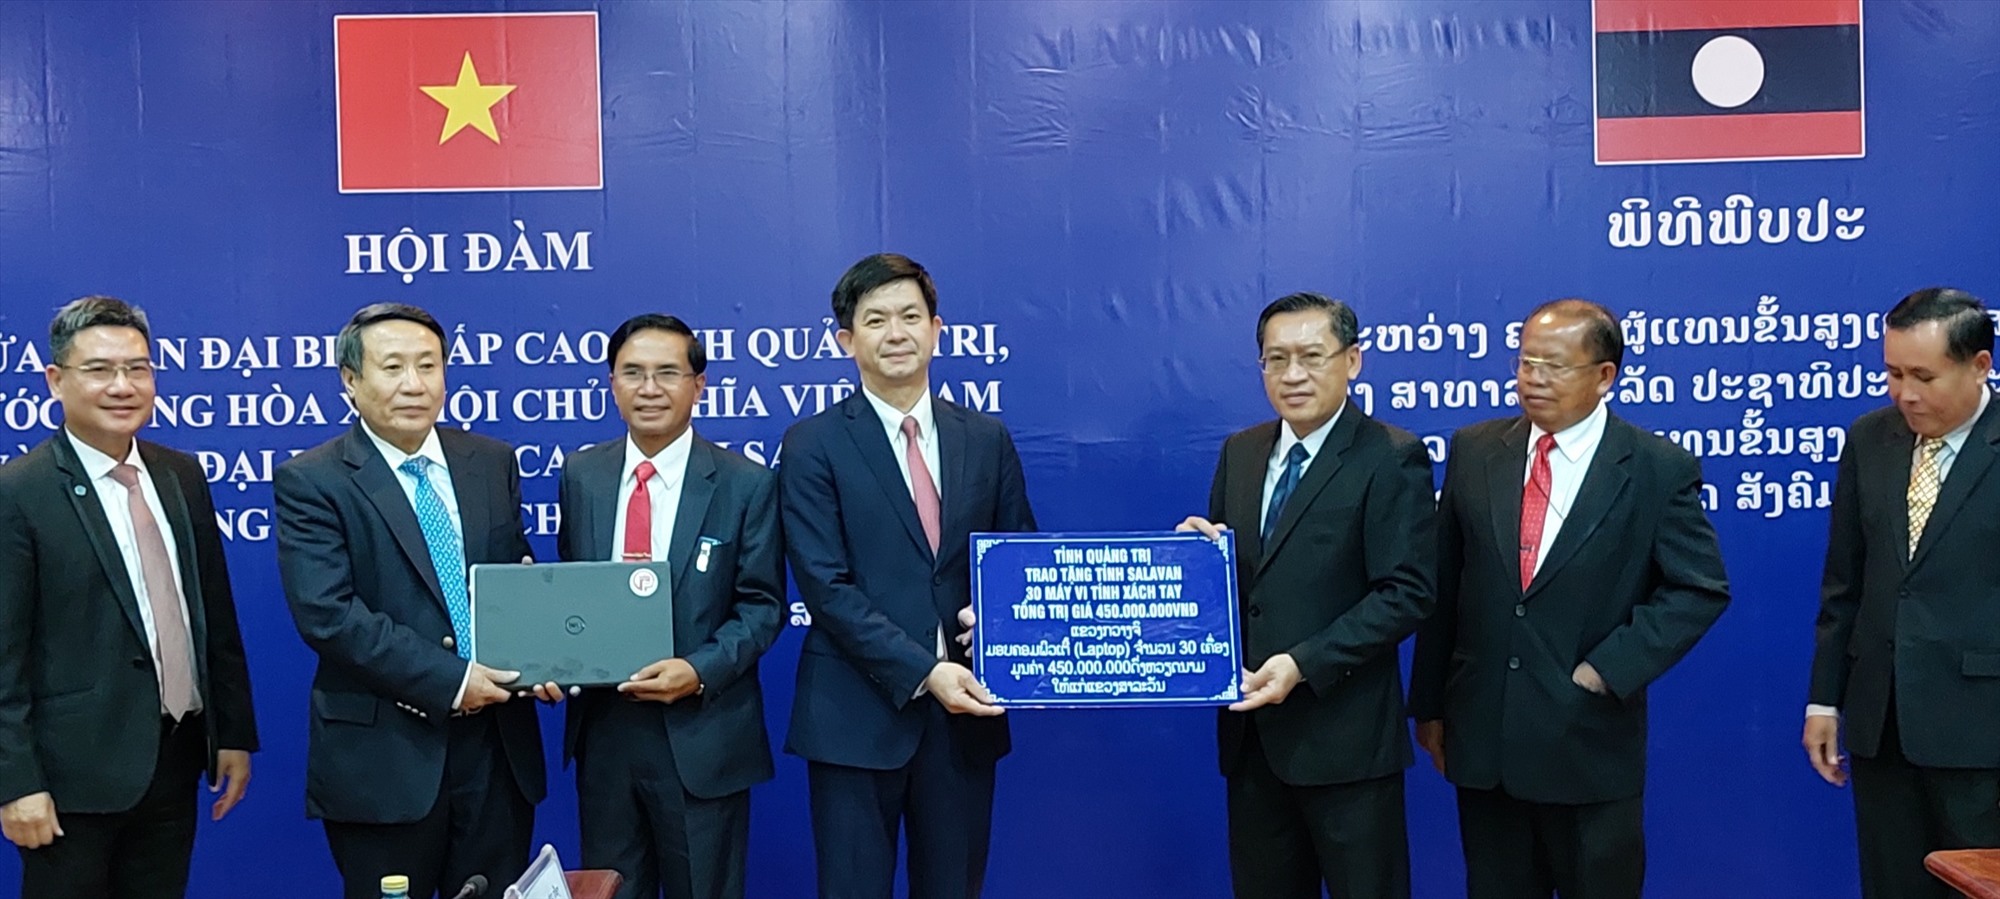 Đoàn đại biểu cấp cao tỉnh Quảng Trị tặng máy vi tính xách tay cho tỉnh Salavan - Ảnh: N.T.H